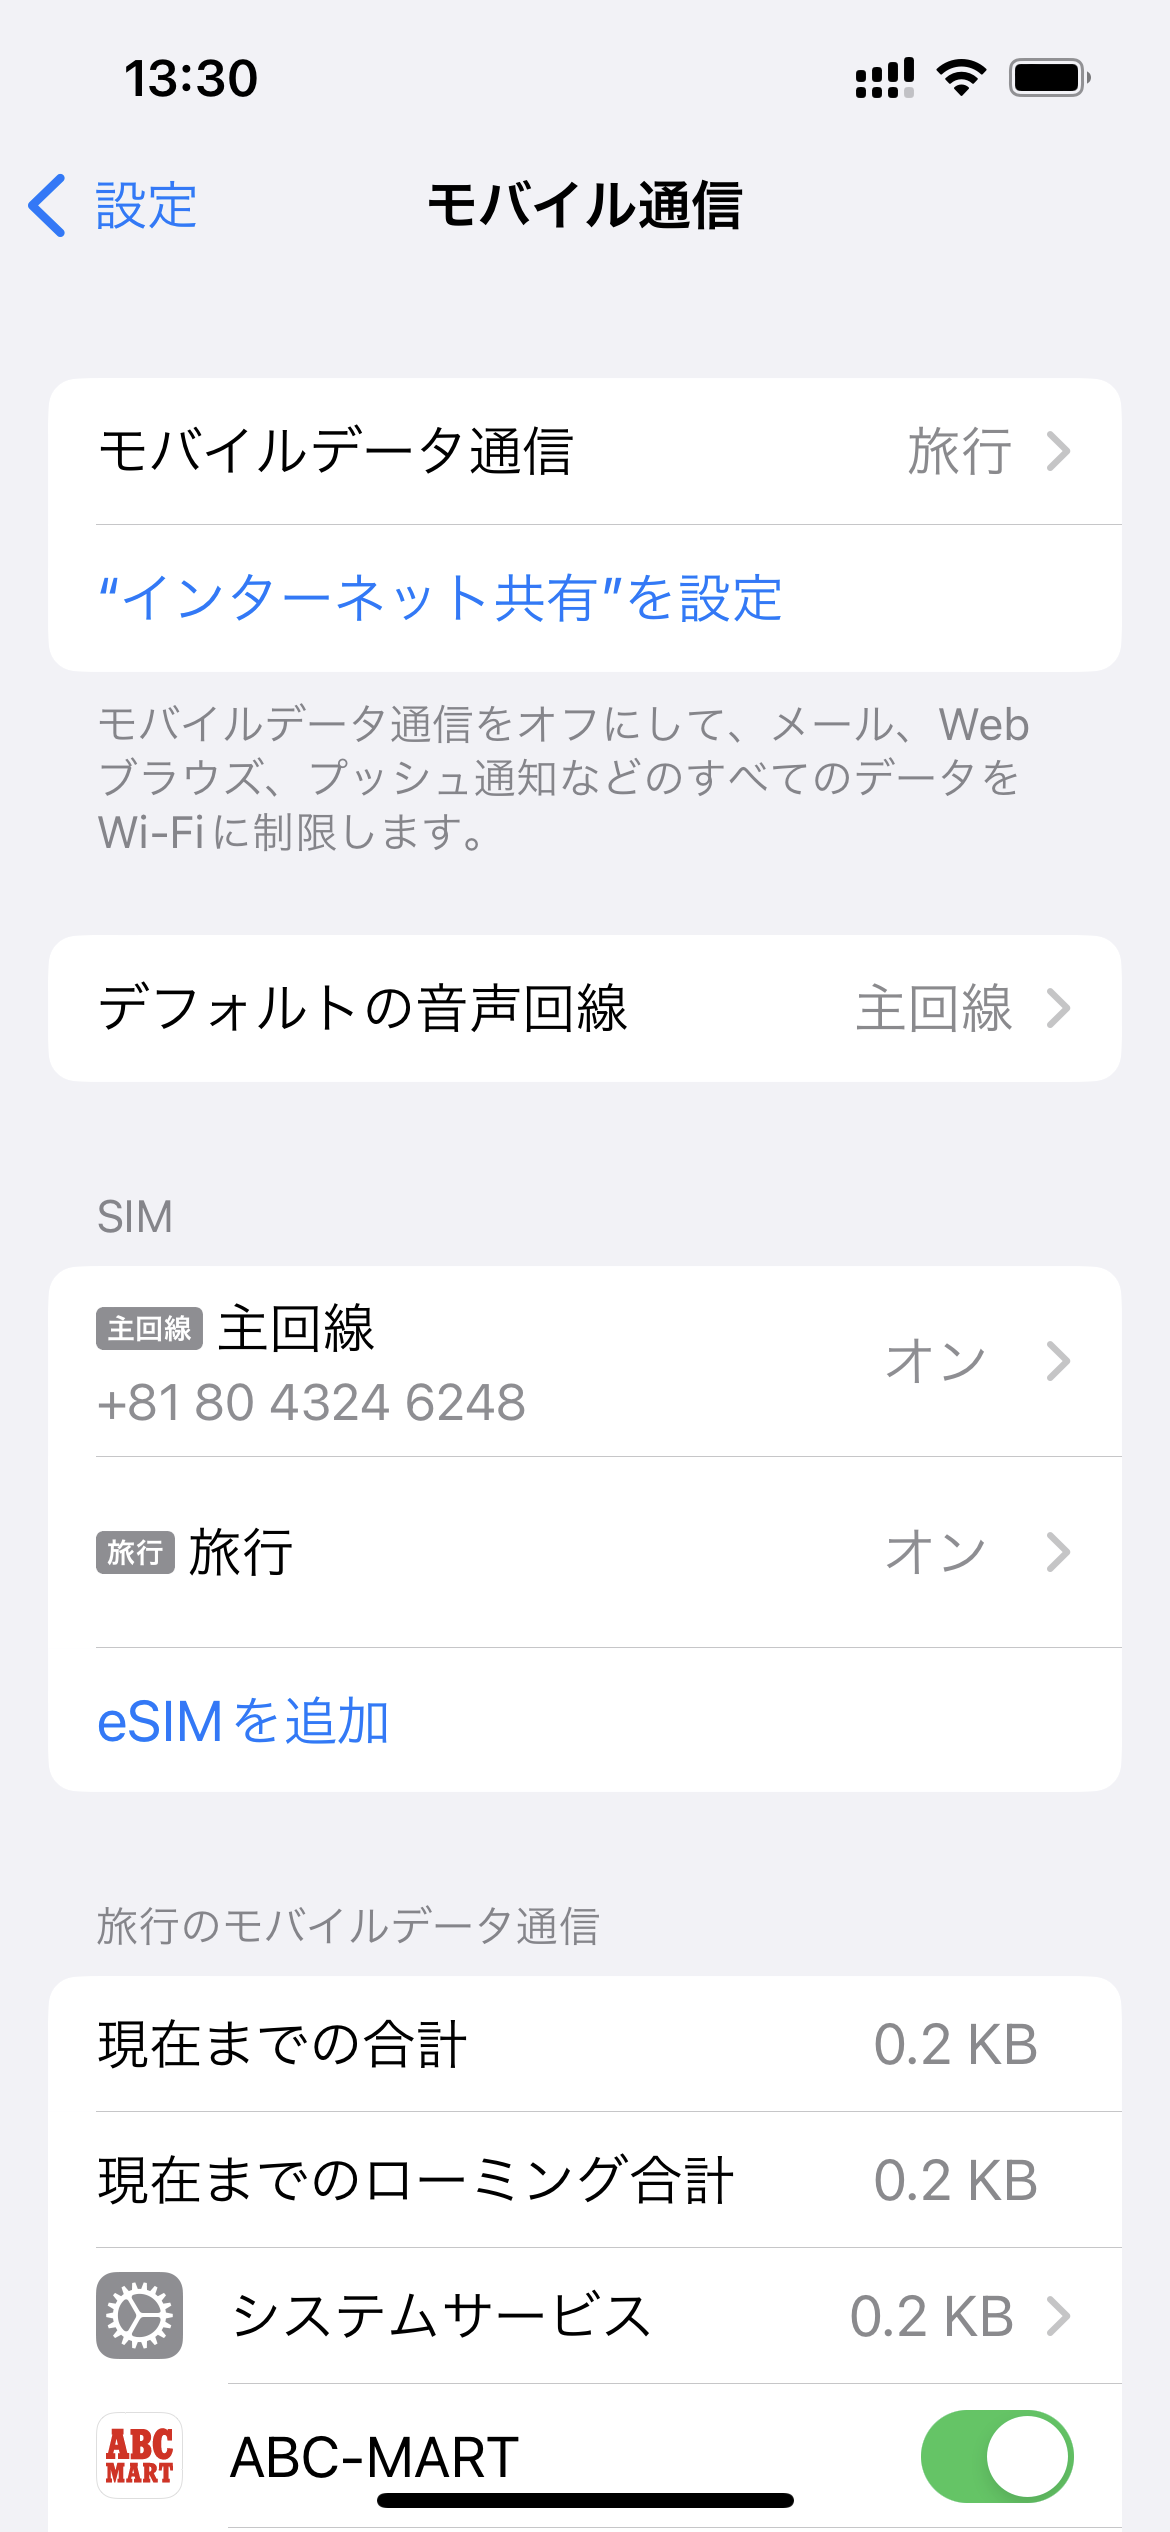 モバイル通信に戻り、SIM欄に表示されている使用する回線（画面上は旅行）を選択